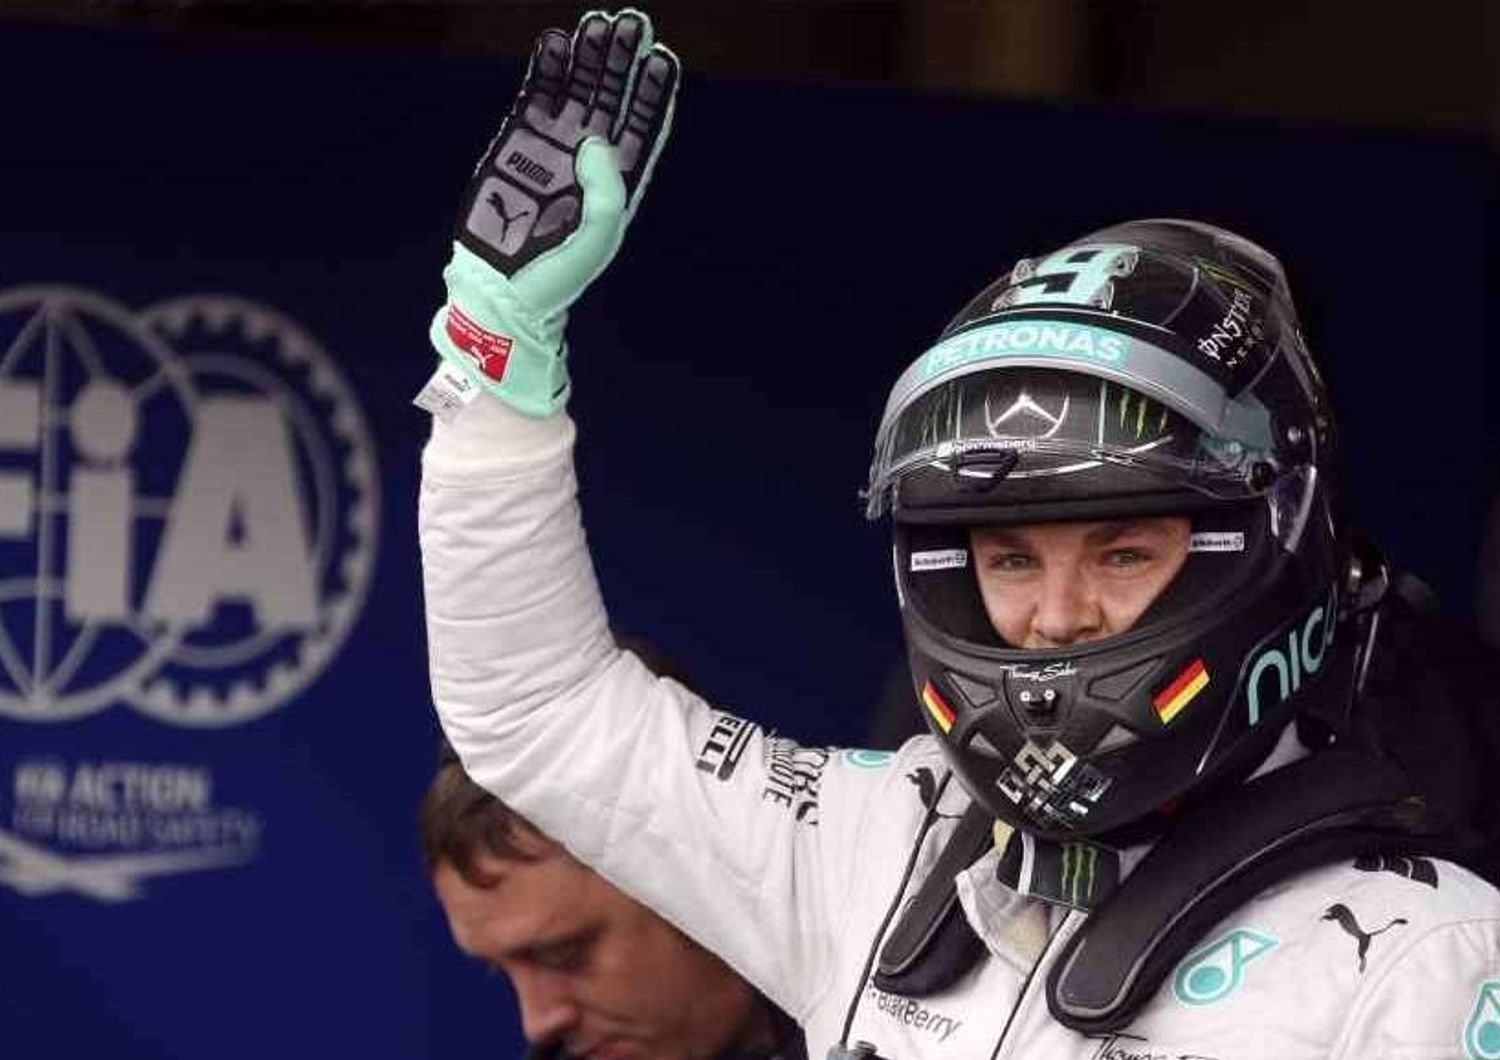 F1: Rosberg fastest in German GP practices